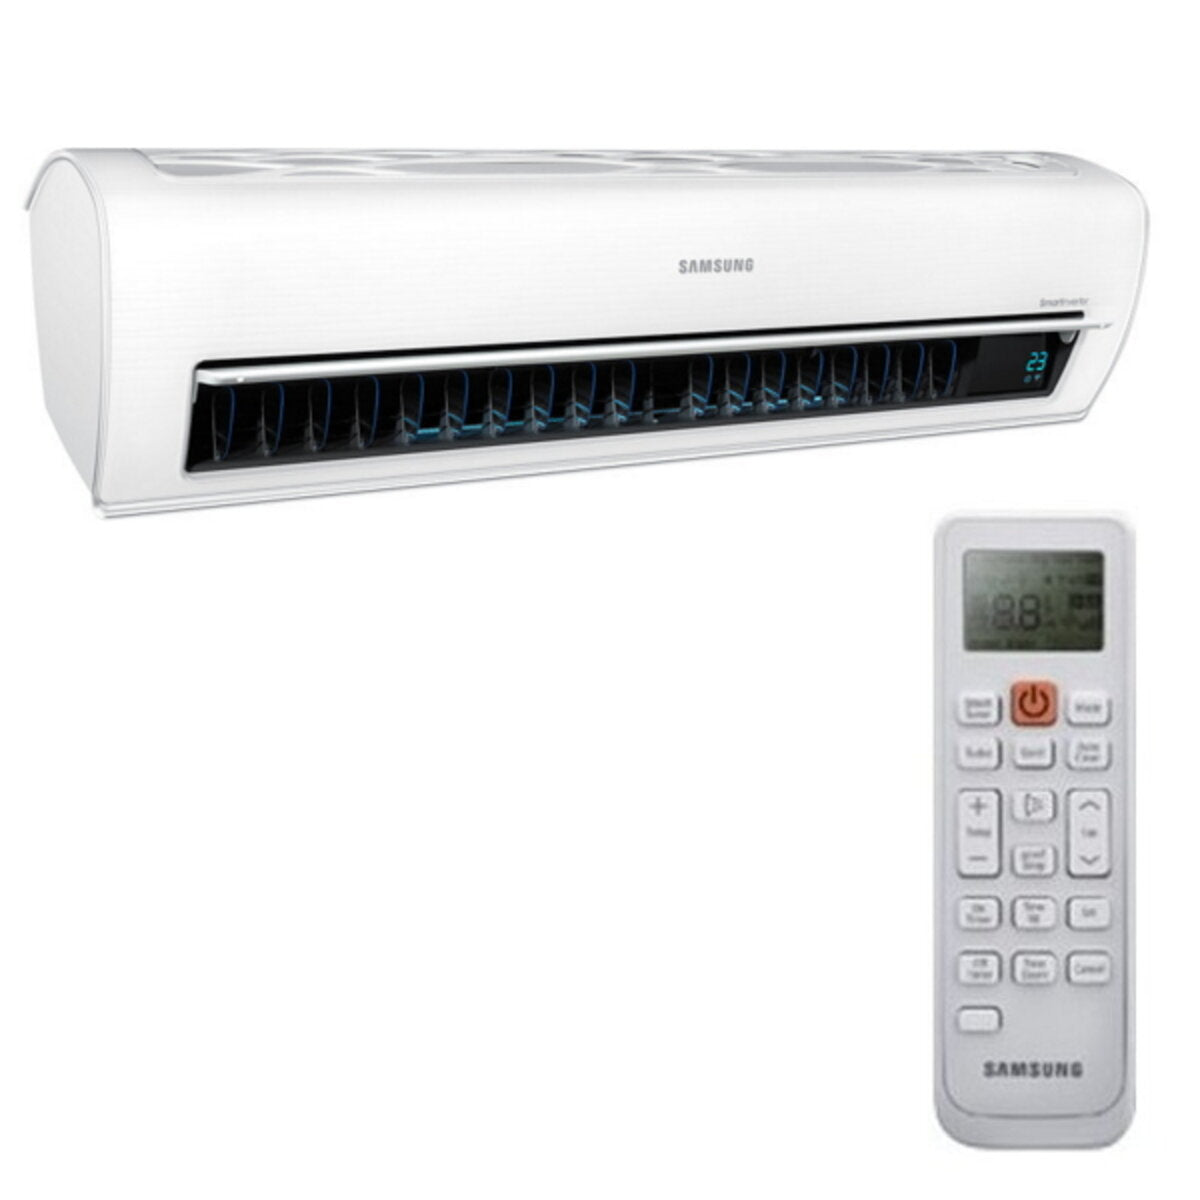 Samsung AR7000M split 7000 BTU indoor unit wifi inverter air conditioner